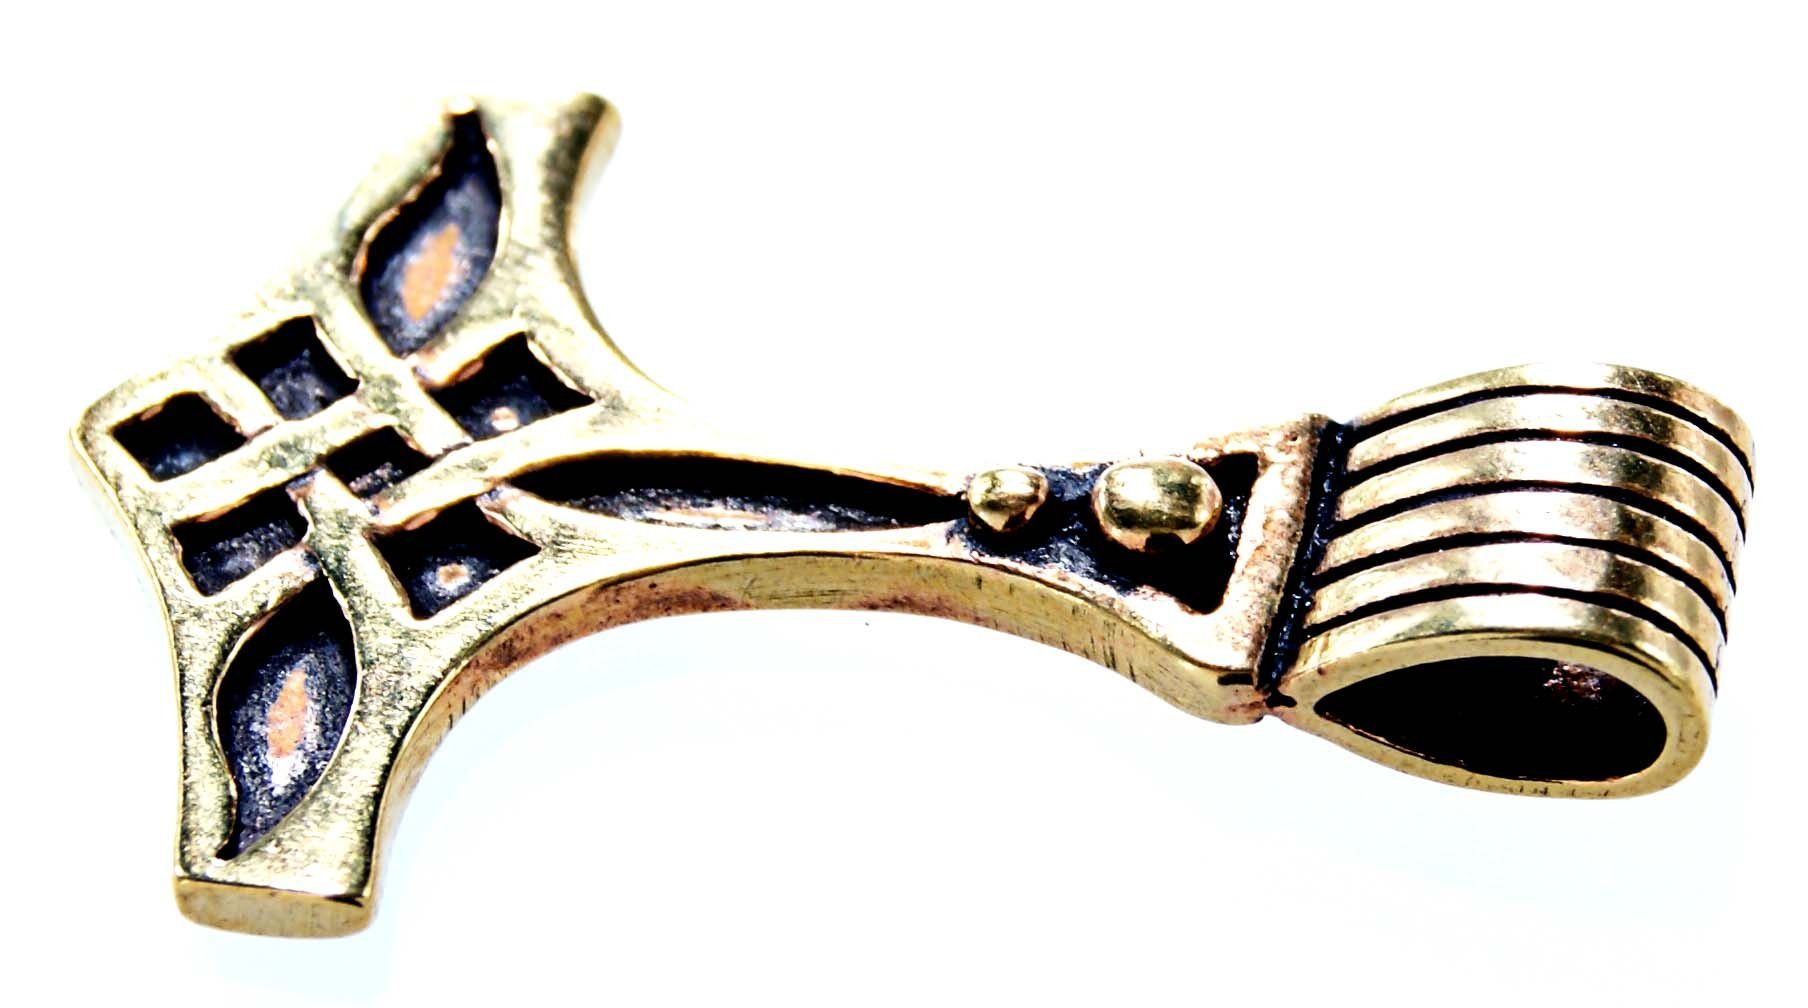 of Kettenanhänger Wikinger Thorshammer Thors Bronze Leather Thorhammer Thor Odin Kiss Hammer